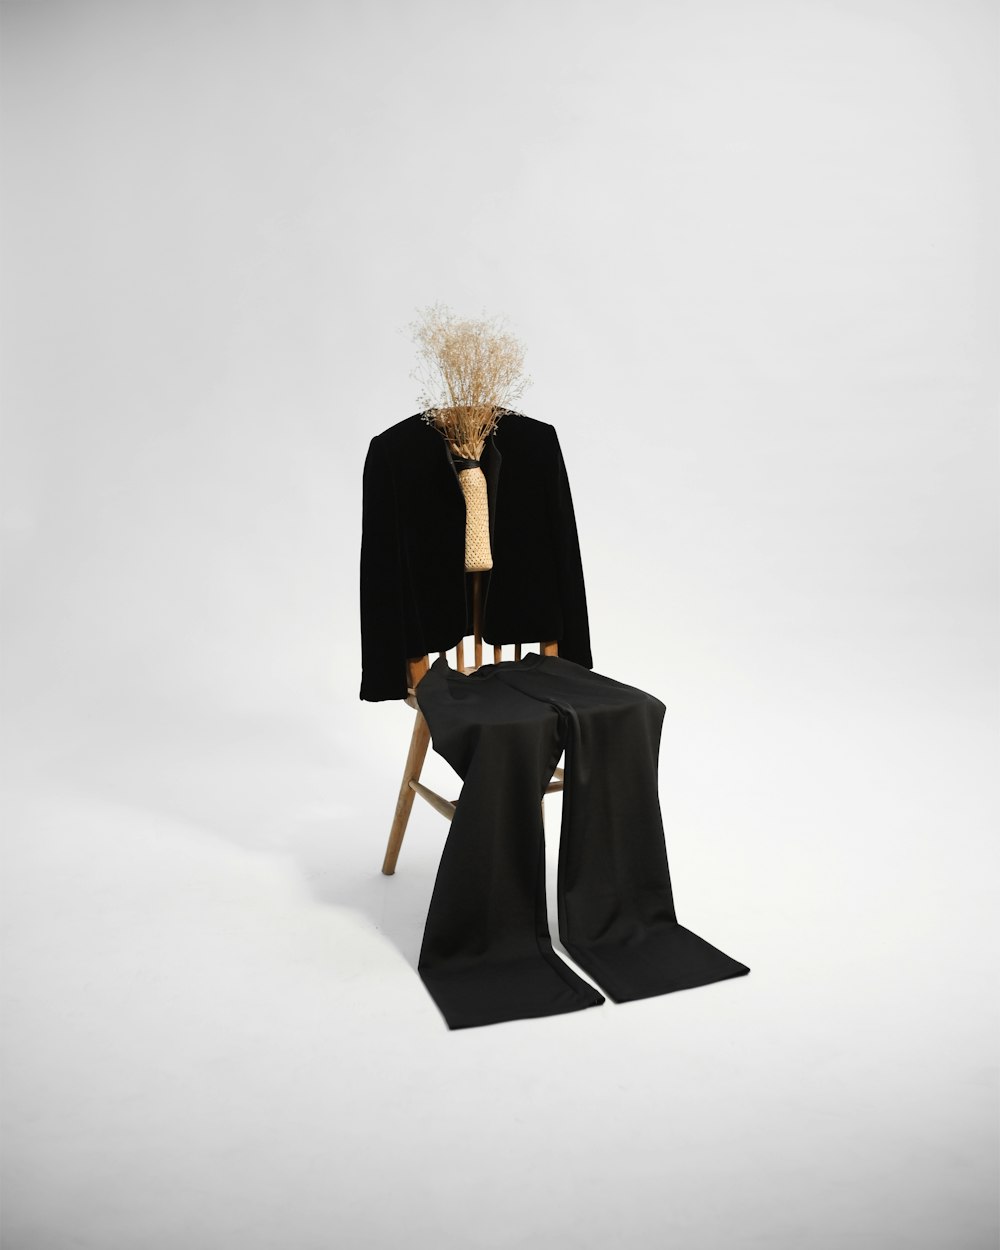 donna in cappotto nero che si siede sulla sedia di legno marrone